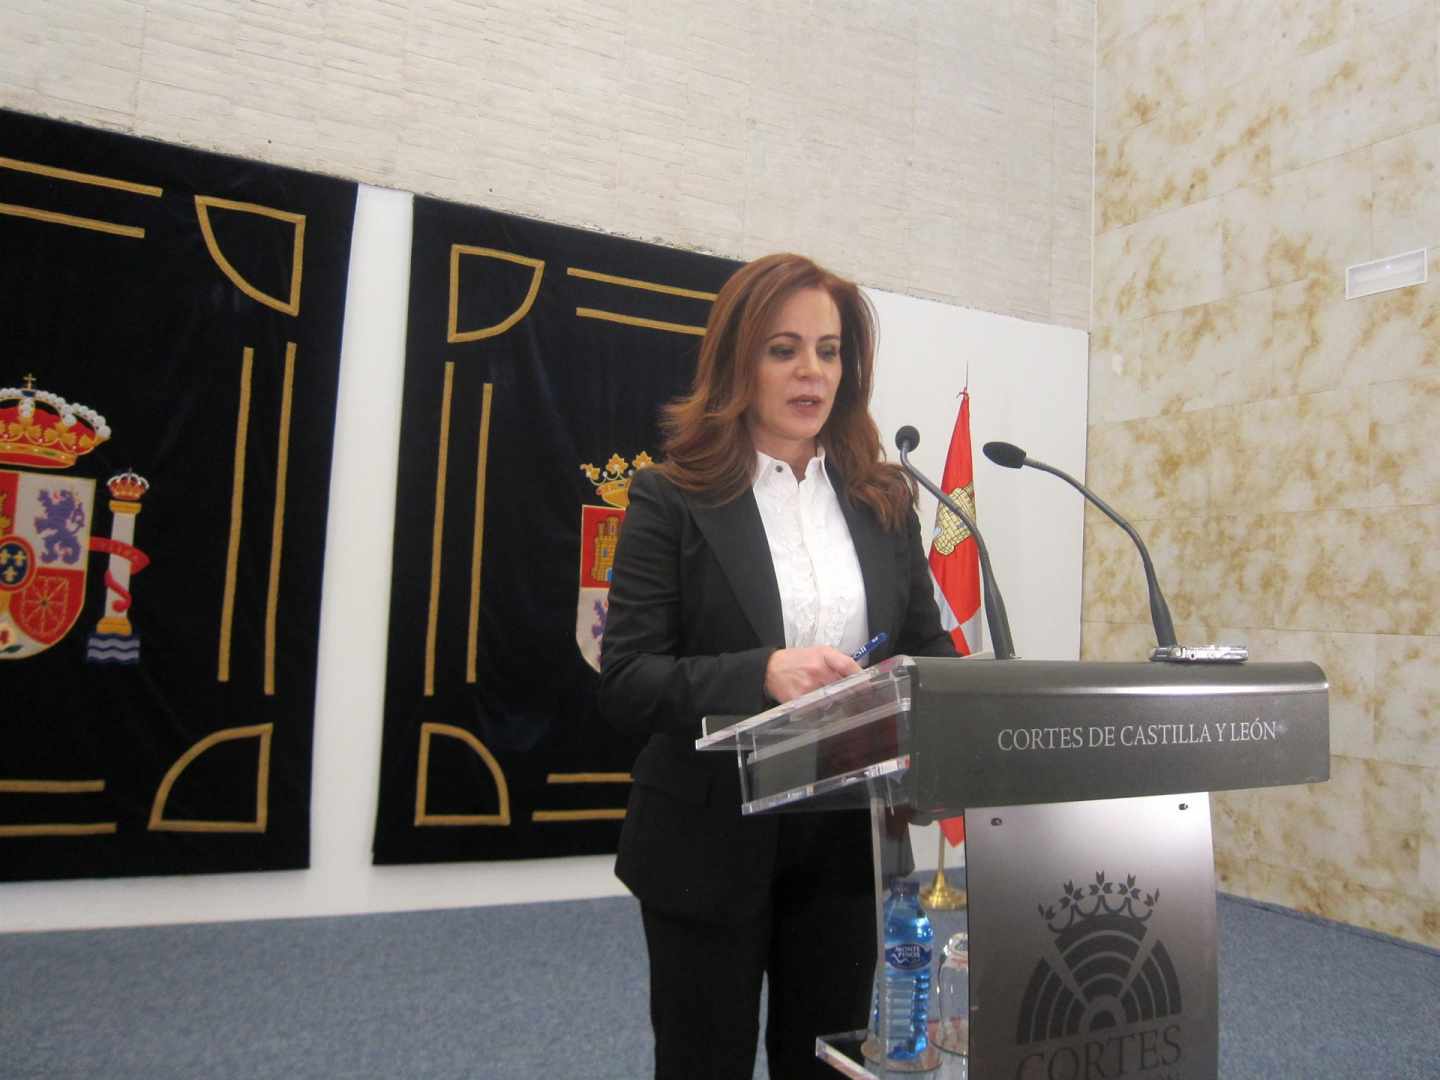 La presidenta de las Cortes de Castilla y León deja su cargo decepcionada con PP